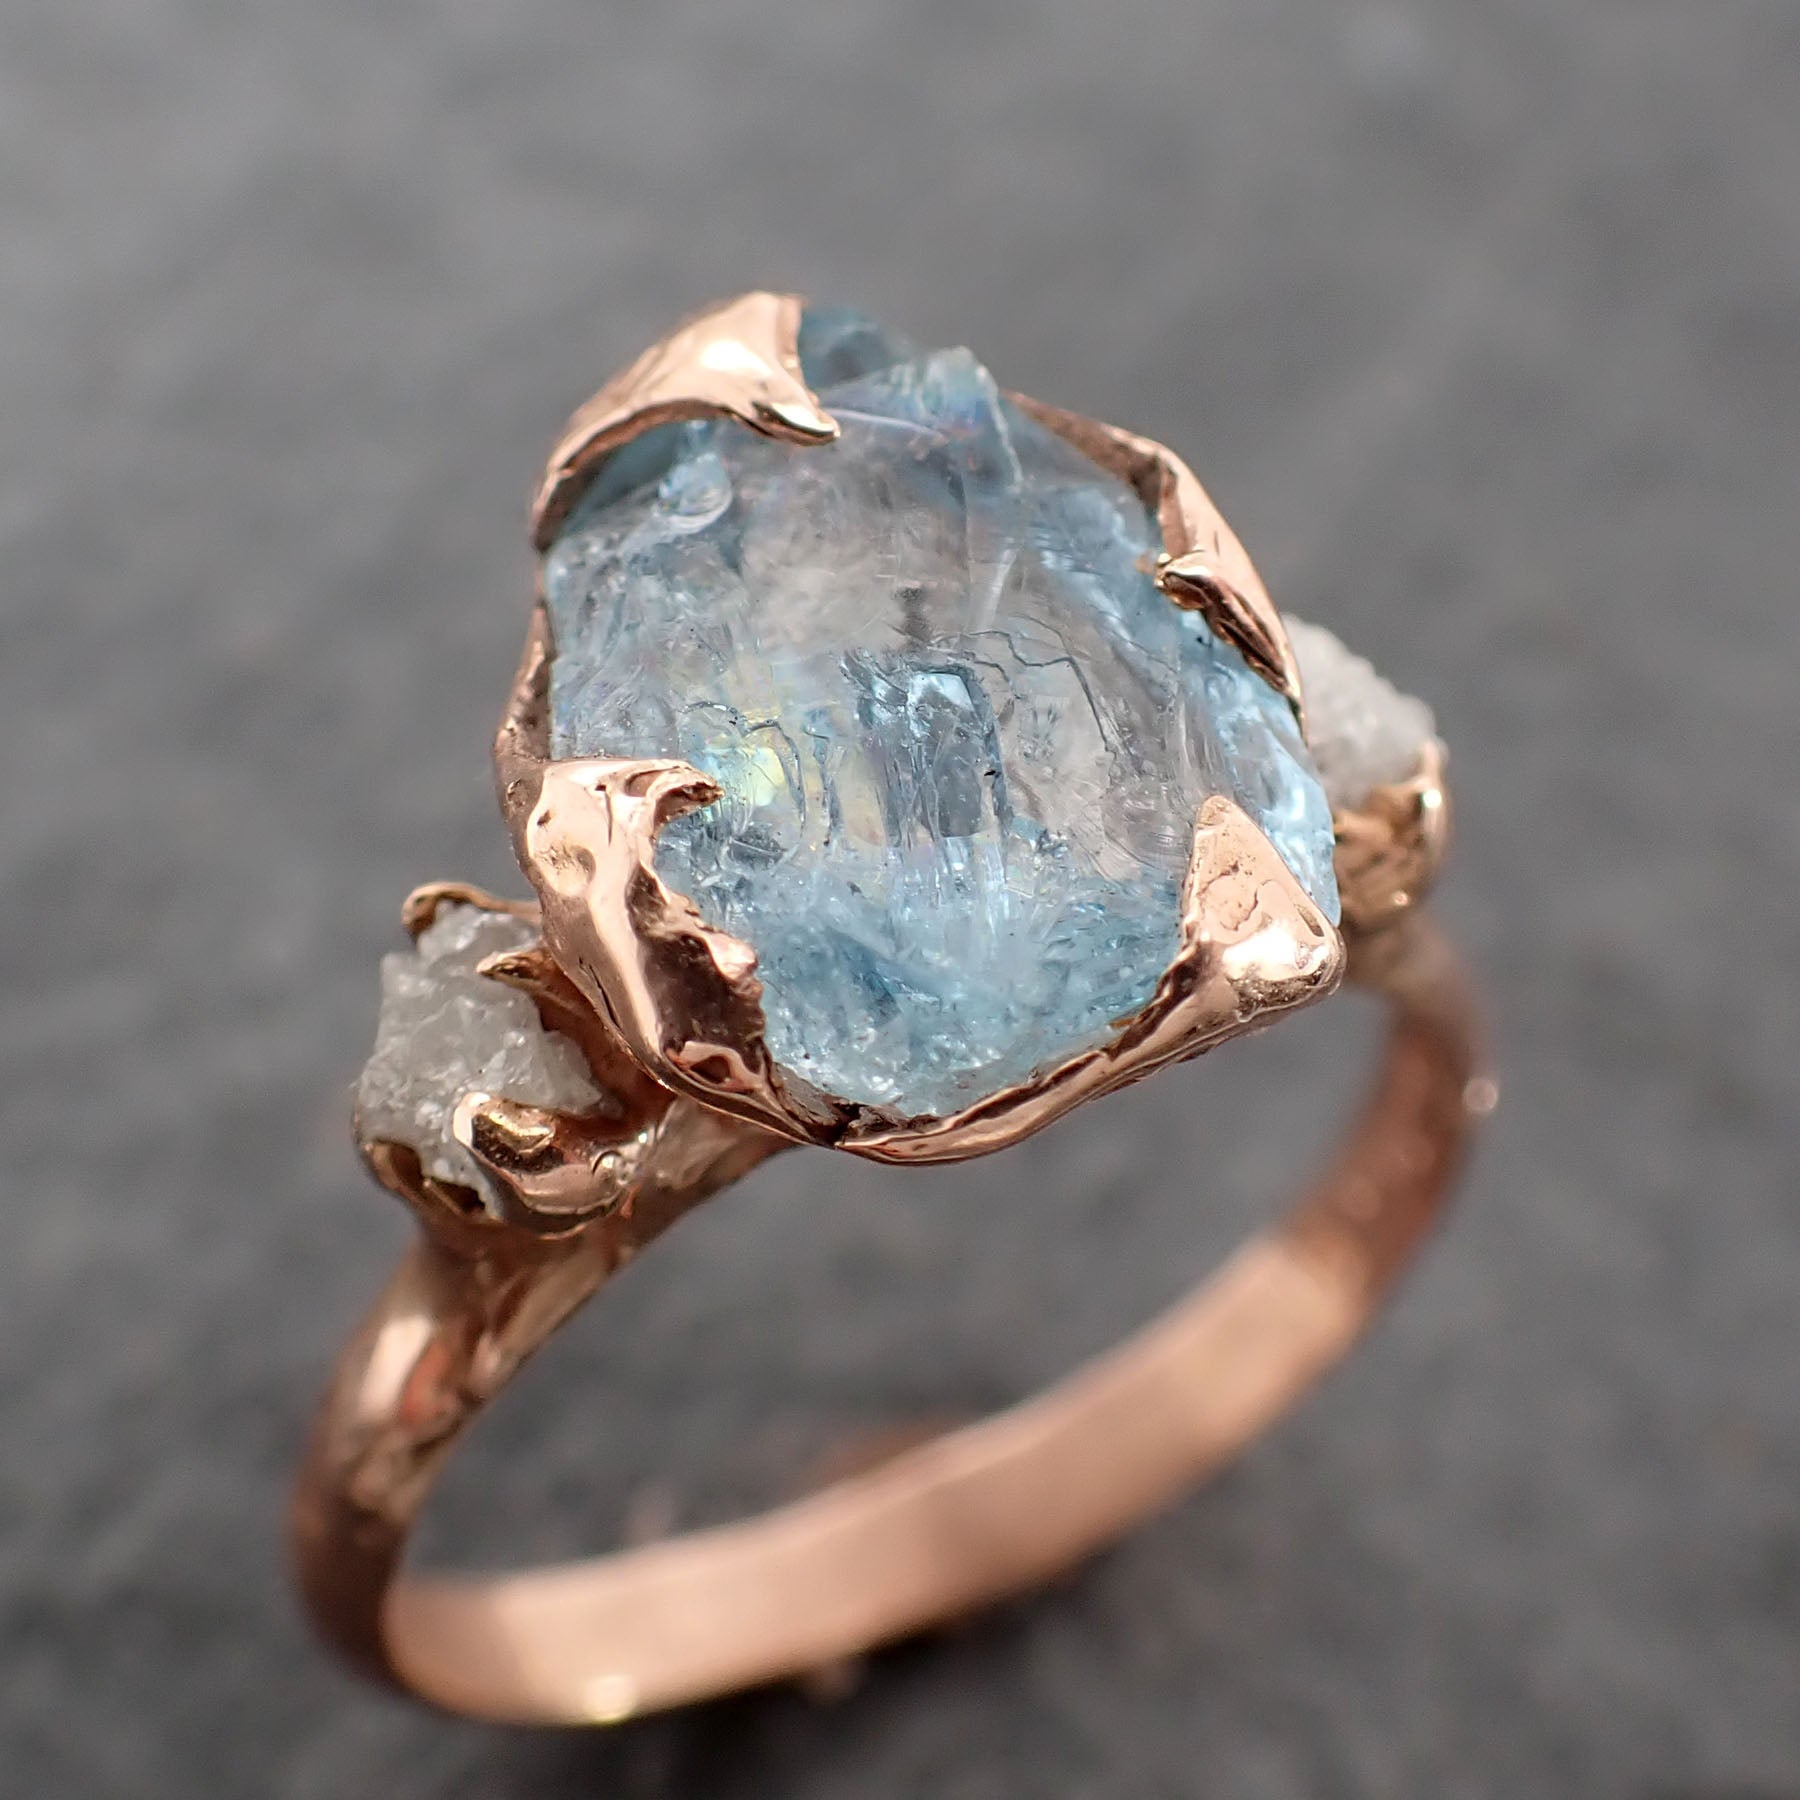 raw uncut aquamarine diamond rose gold engagement ring multi stone wedding 14k ring custom gemstone bespoke byangeline 2503 Alternative Engagement